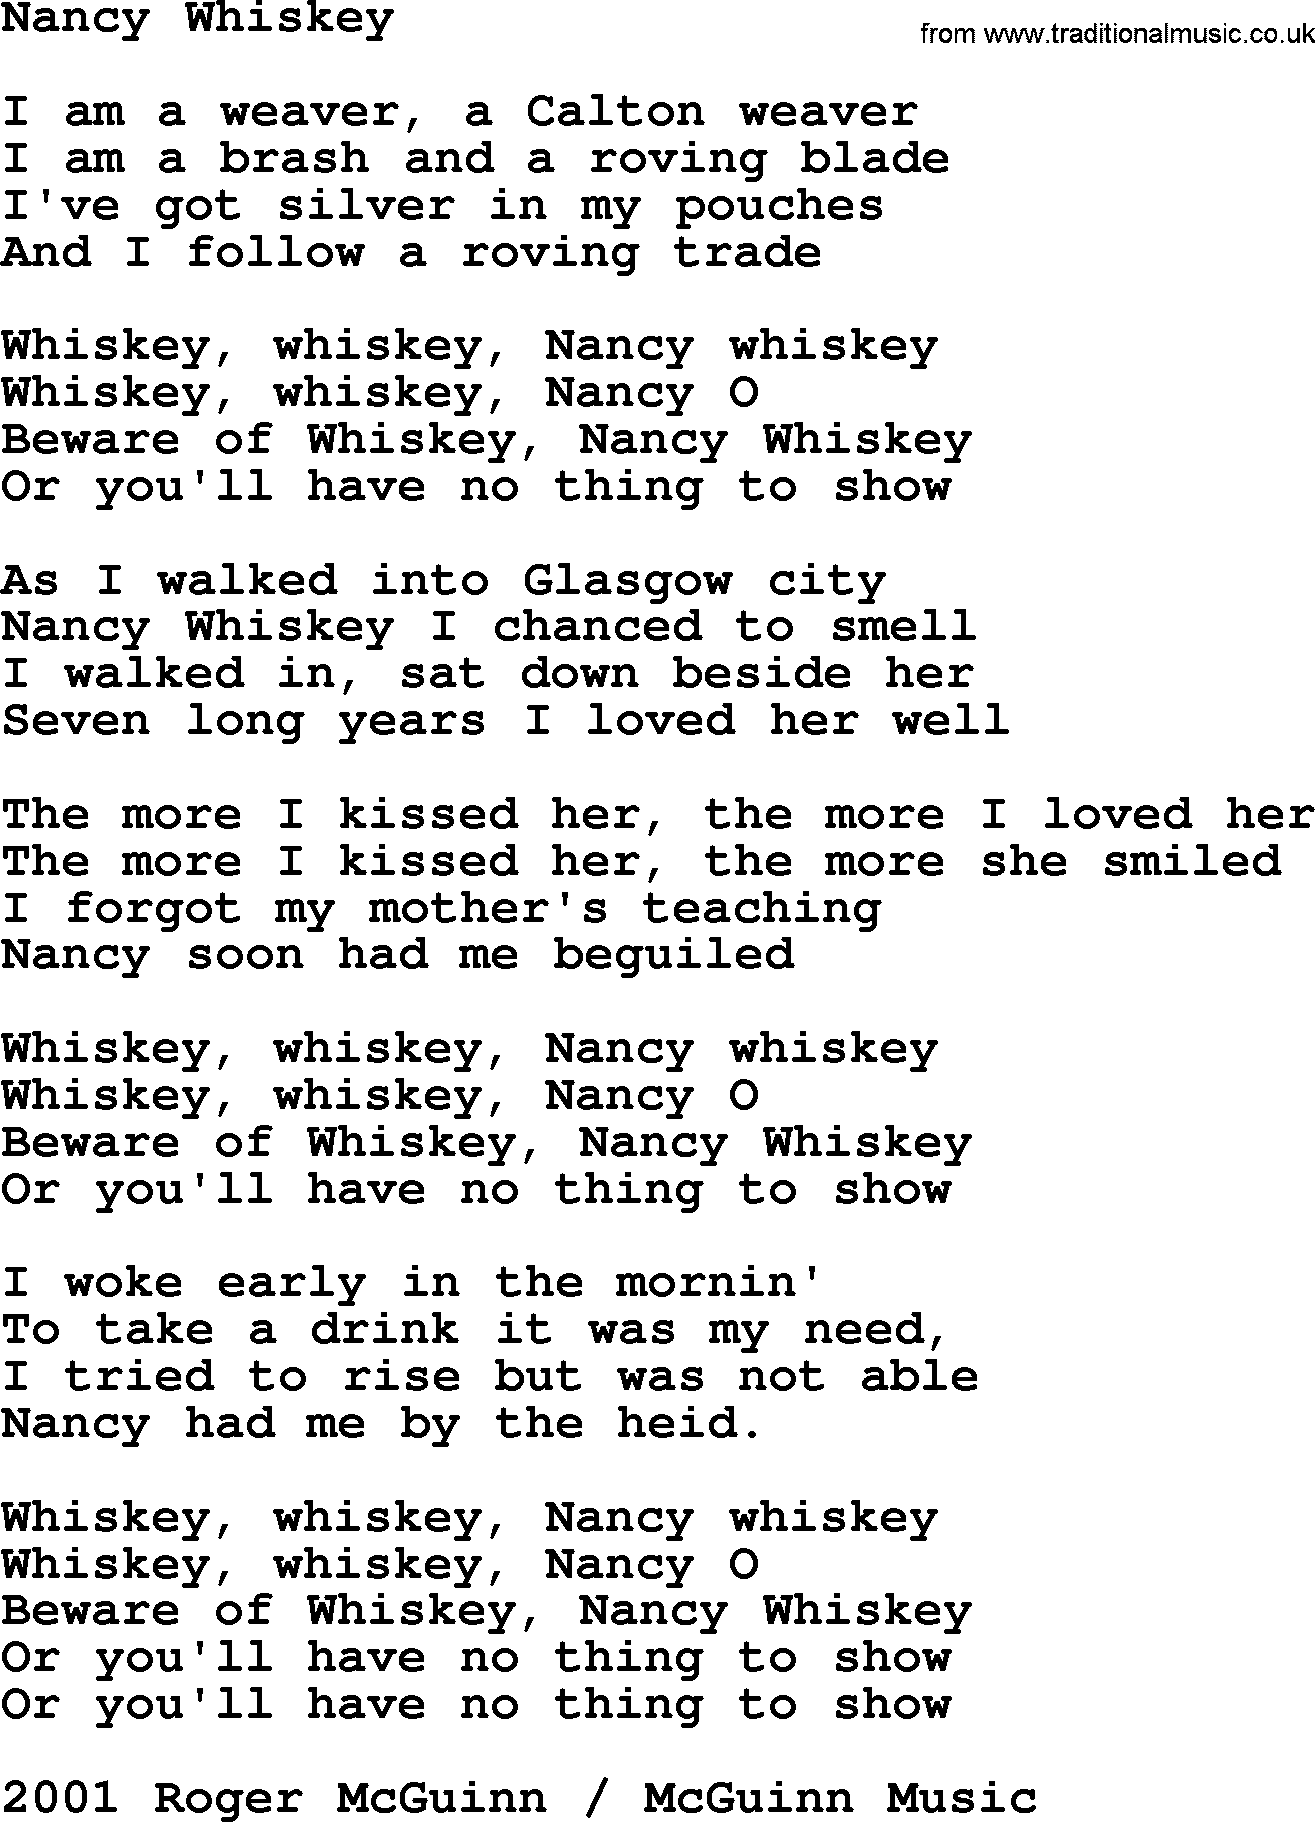 The Byrds song Nancy Whiskey, lyrics